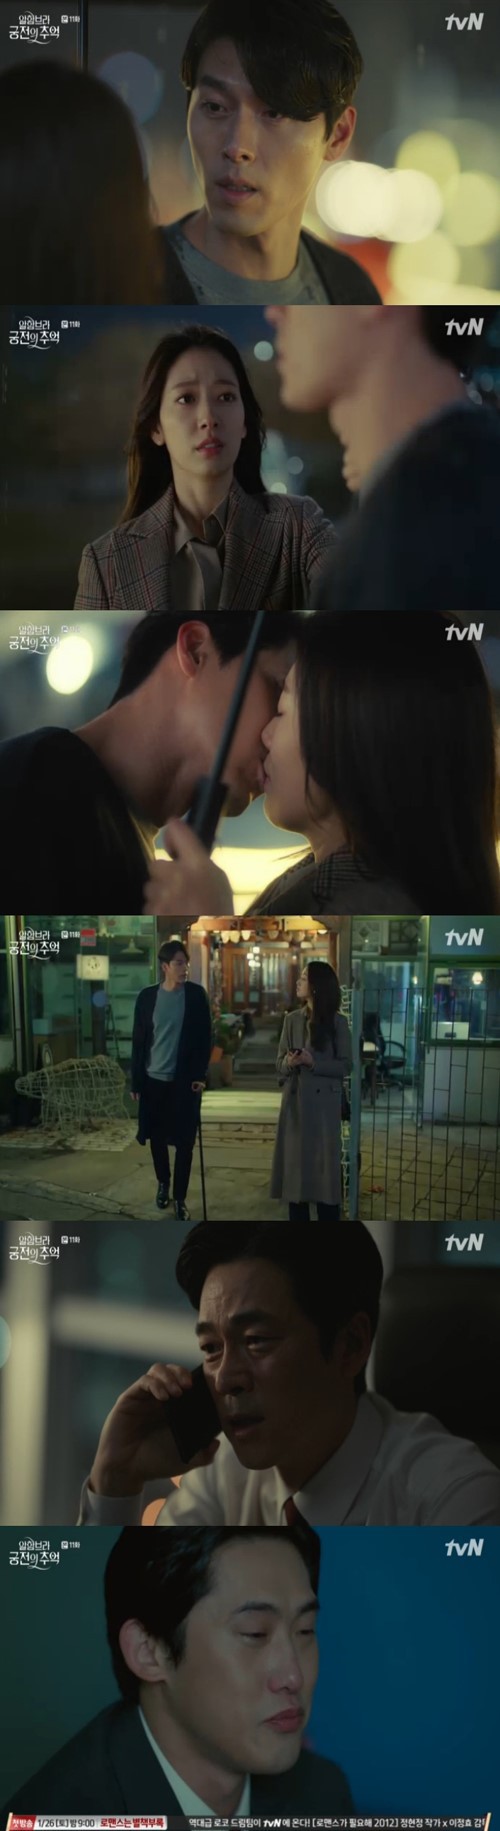 tvN 드라마 알함브라 궁전의 추억 - 